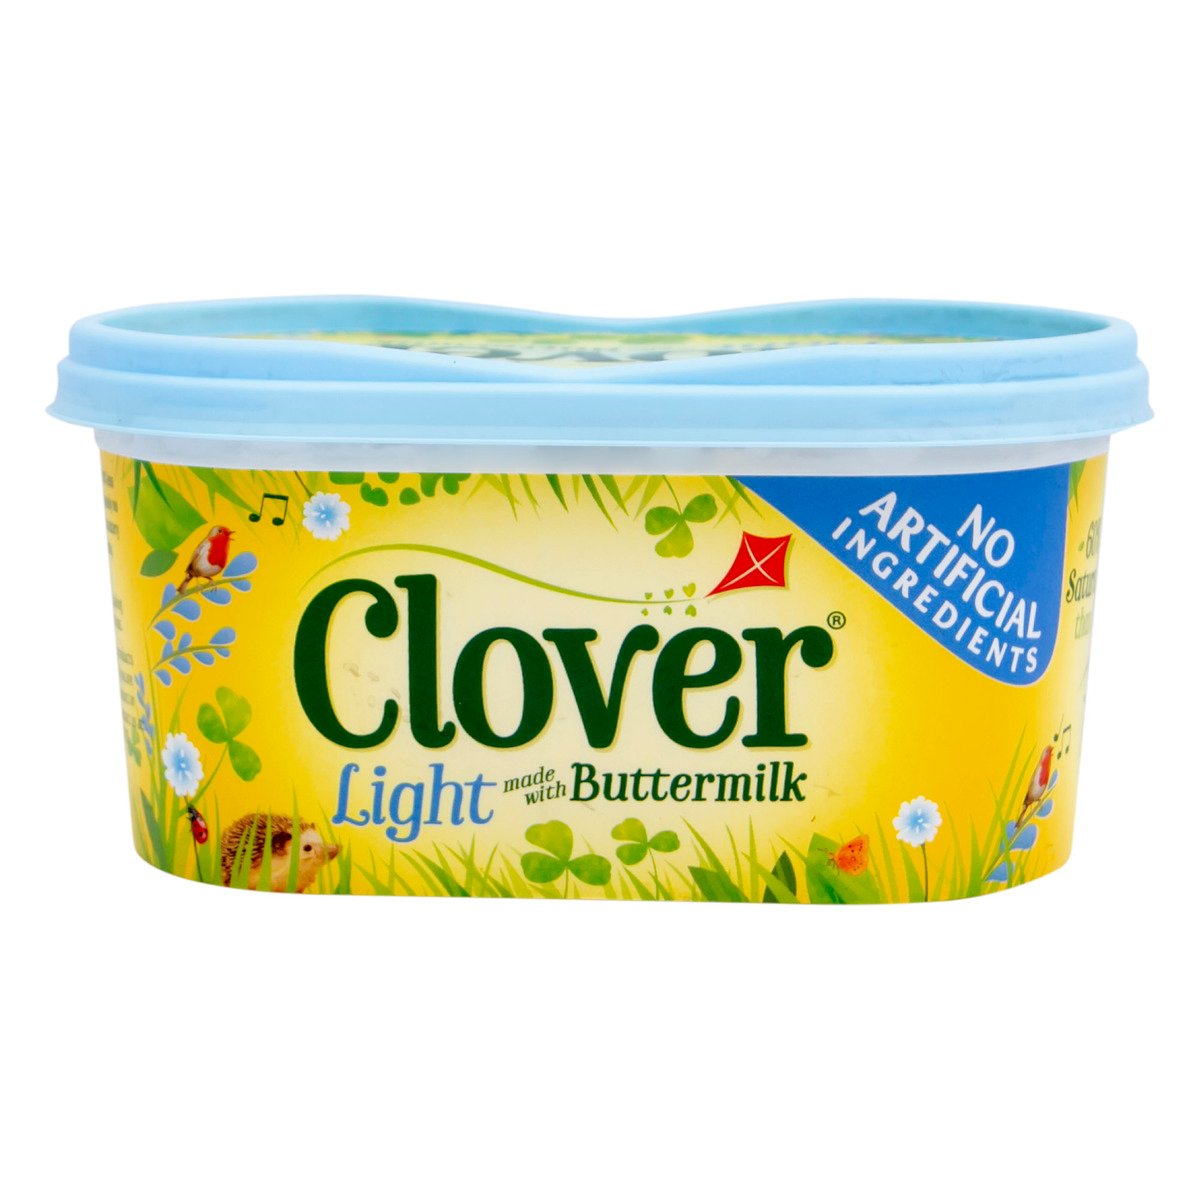 Clover Light Made With Buttermilk 500 g